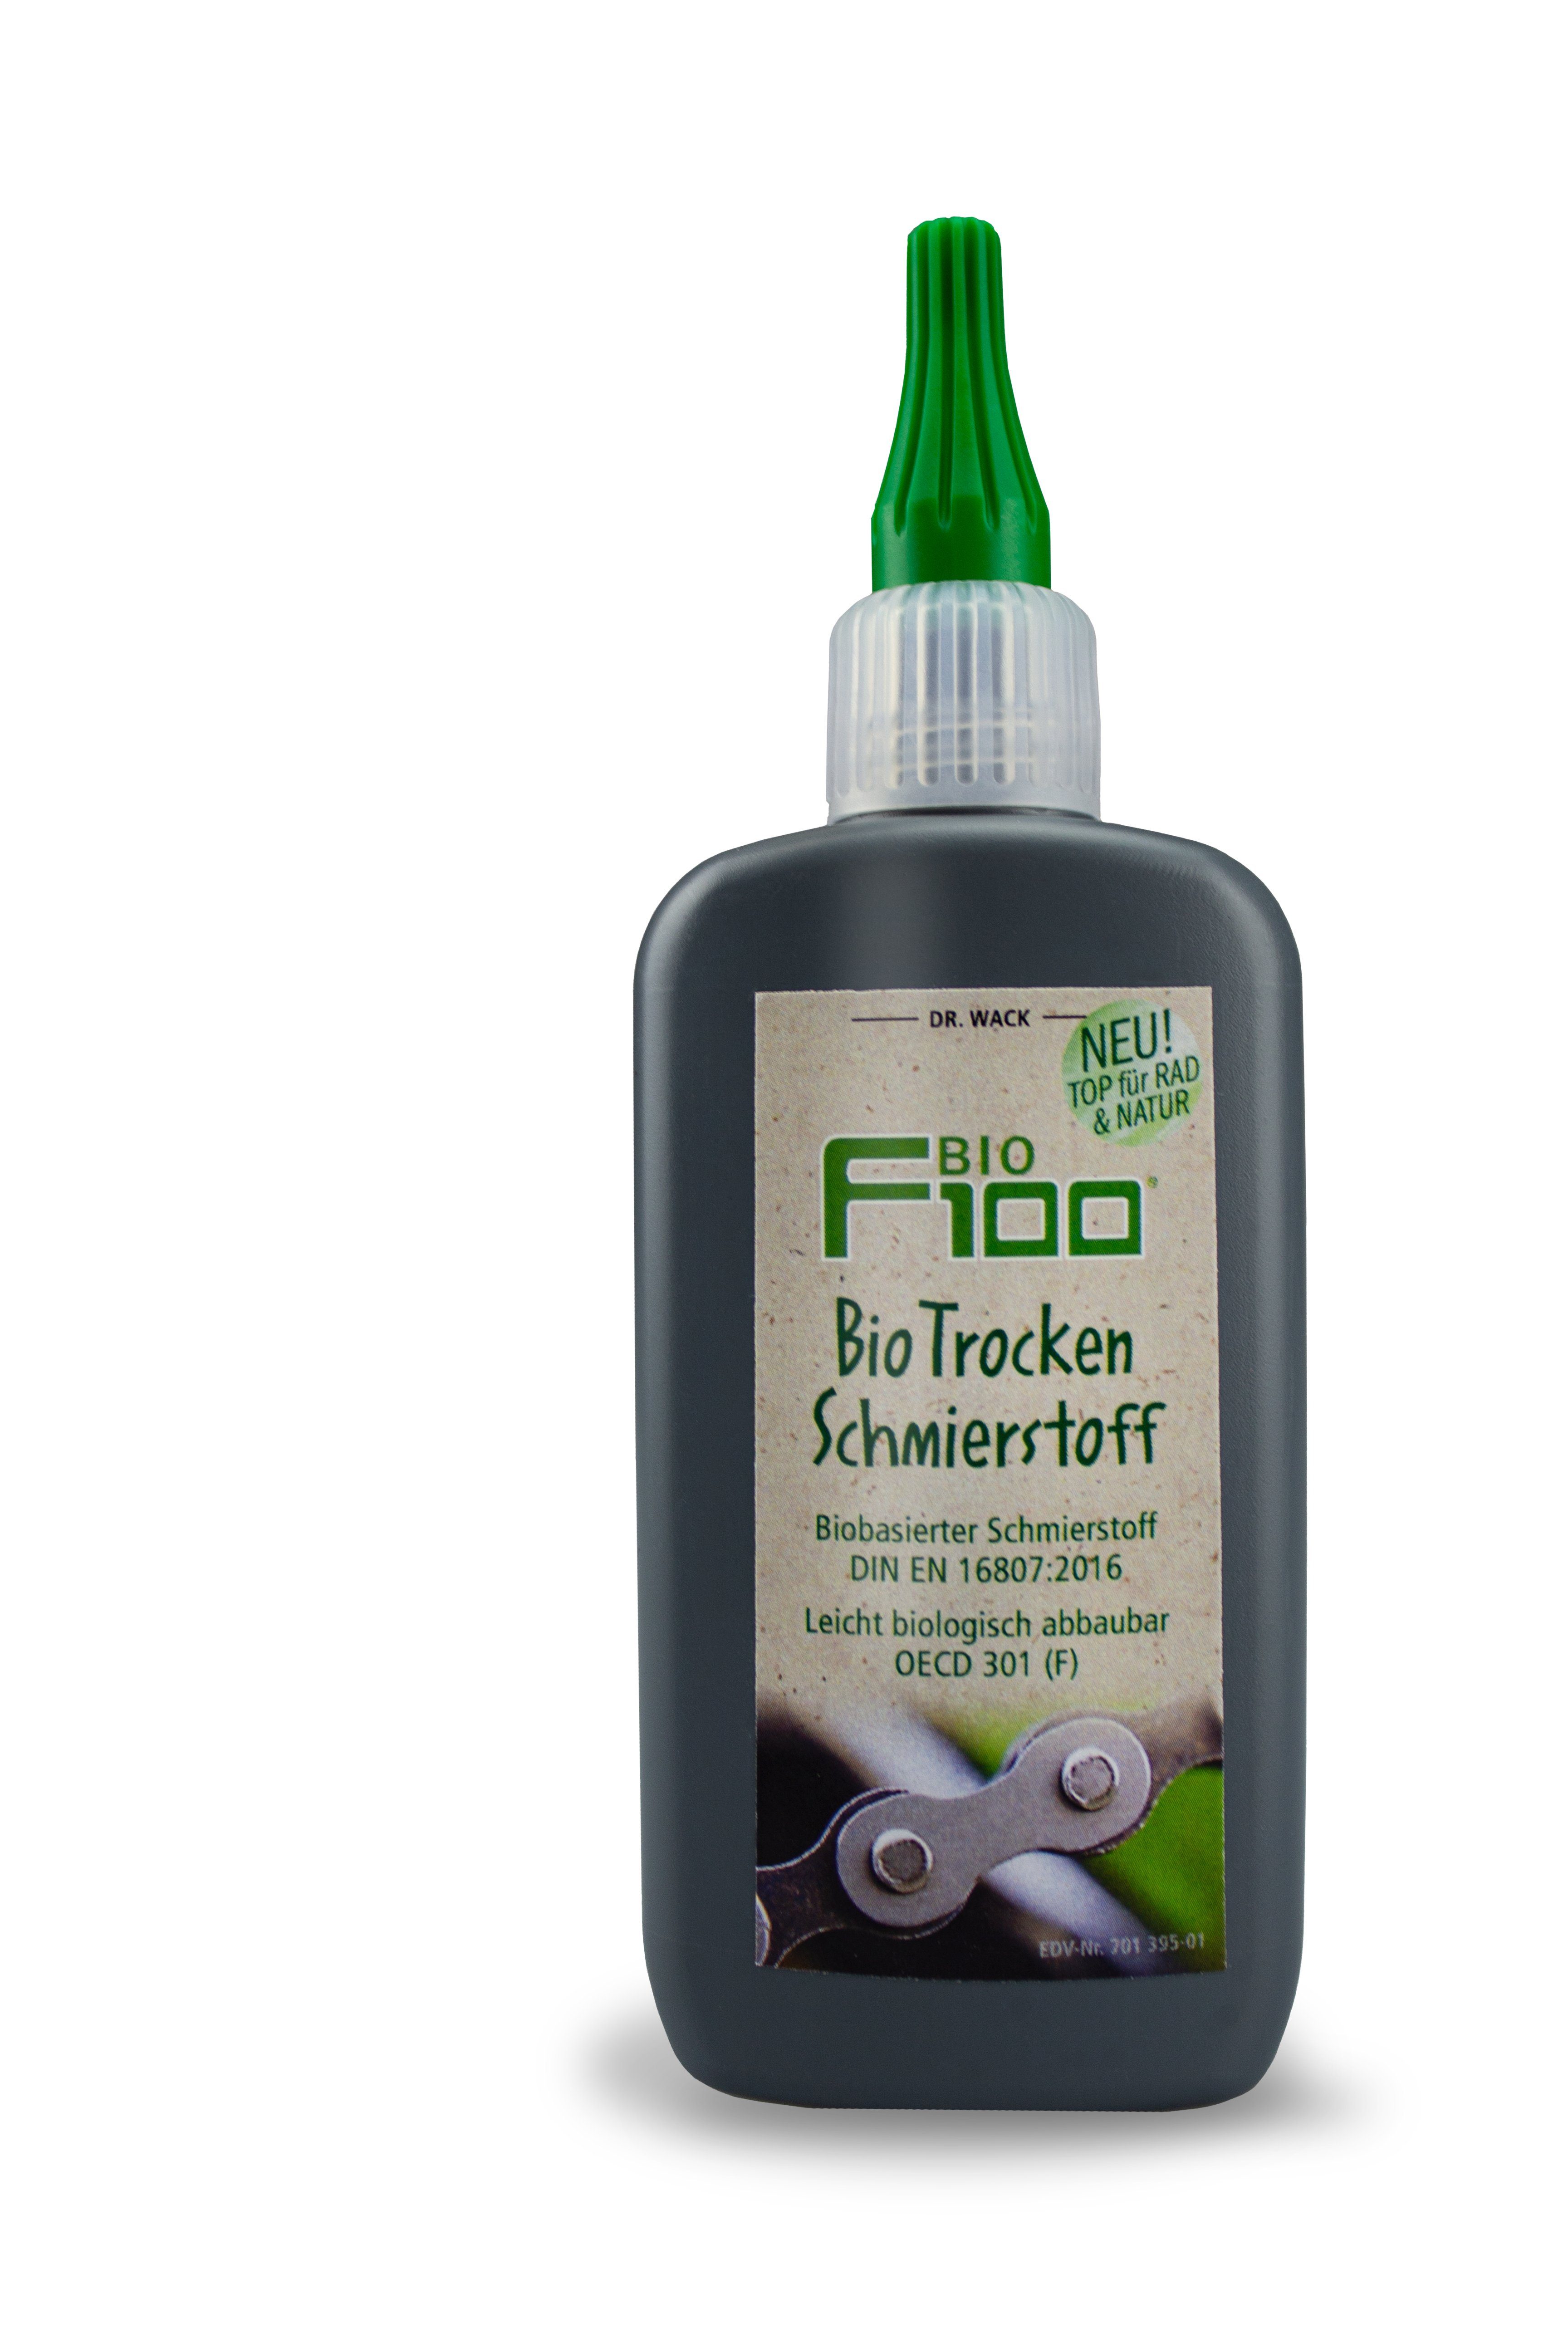 DR WACK Fahrradöl Dr. Wack F100 Bio Trocken Schmierstoff 100 ml